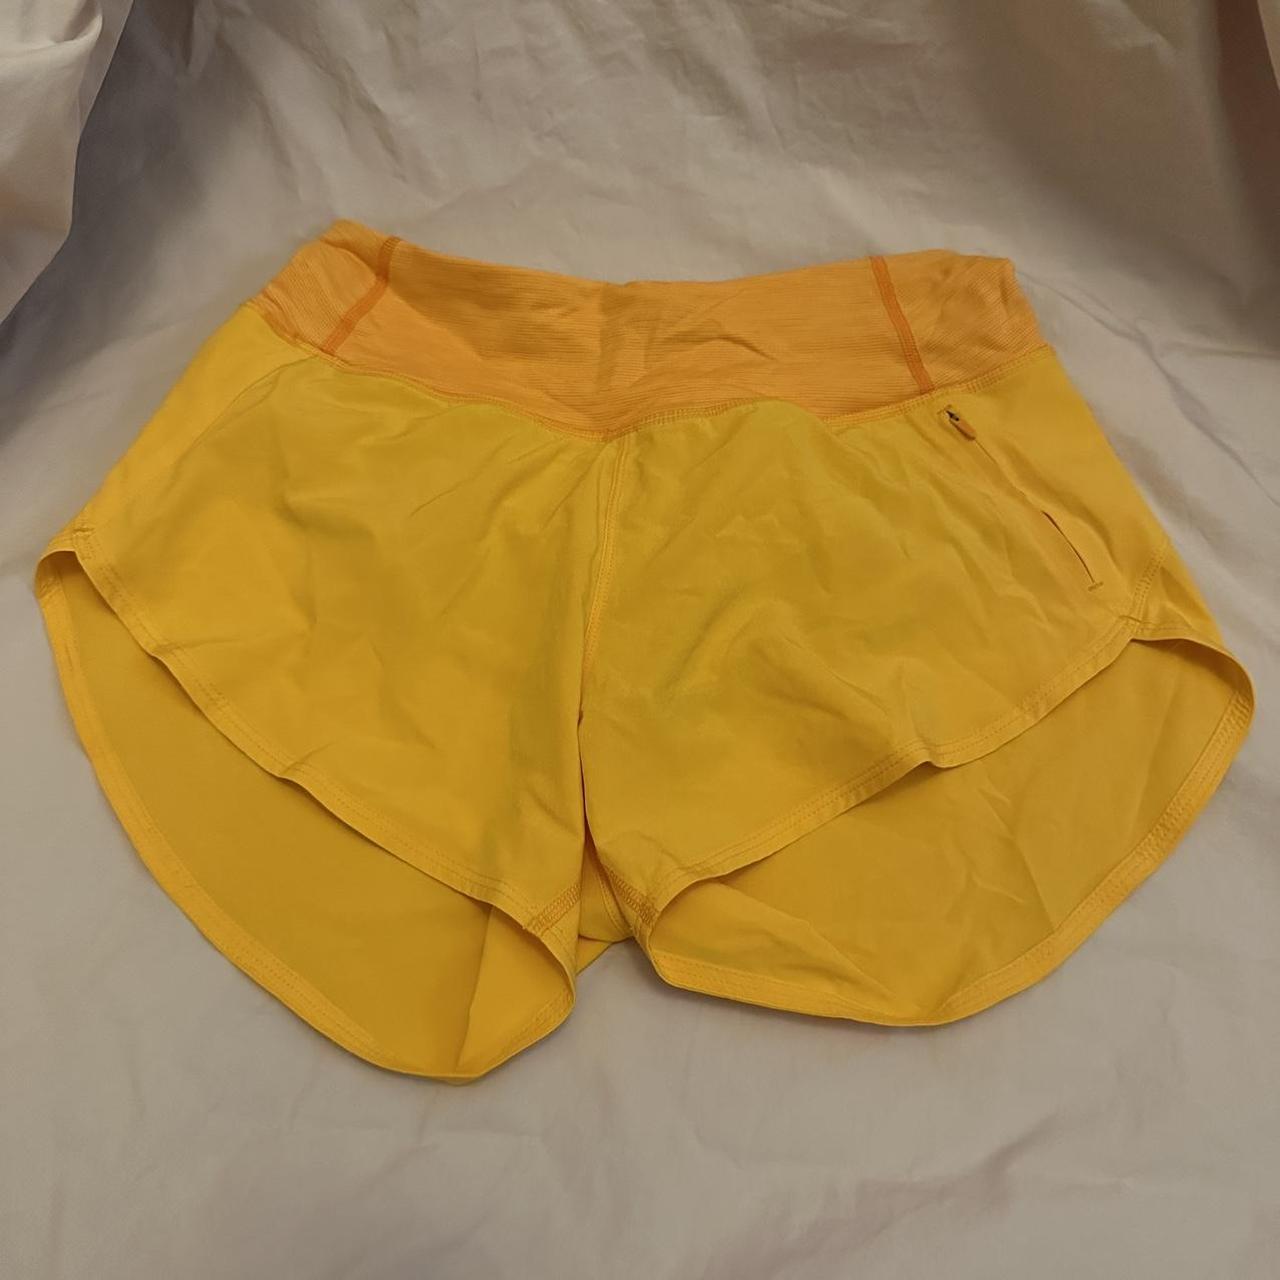 Outdoor voices orange bike shorts - Depop